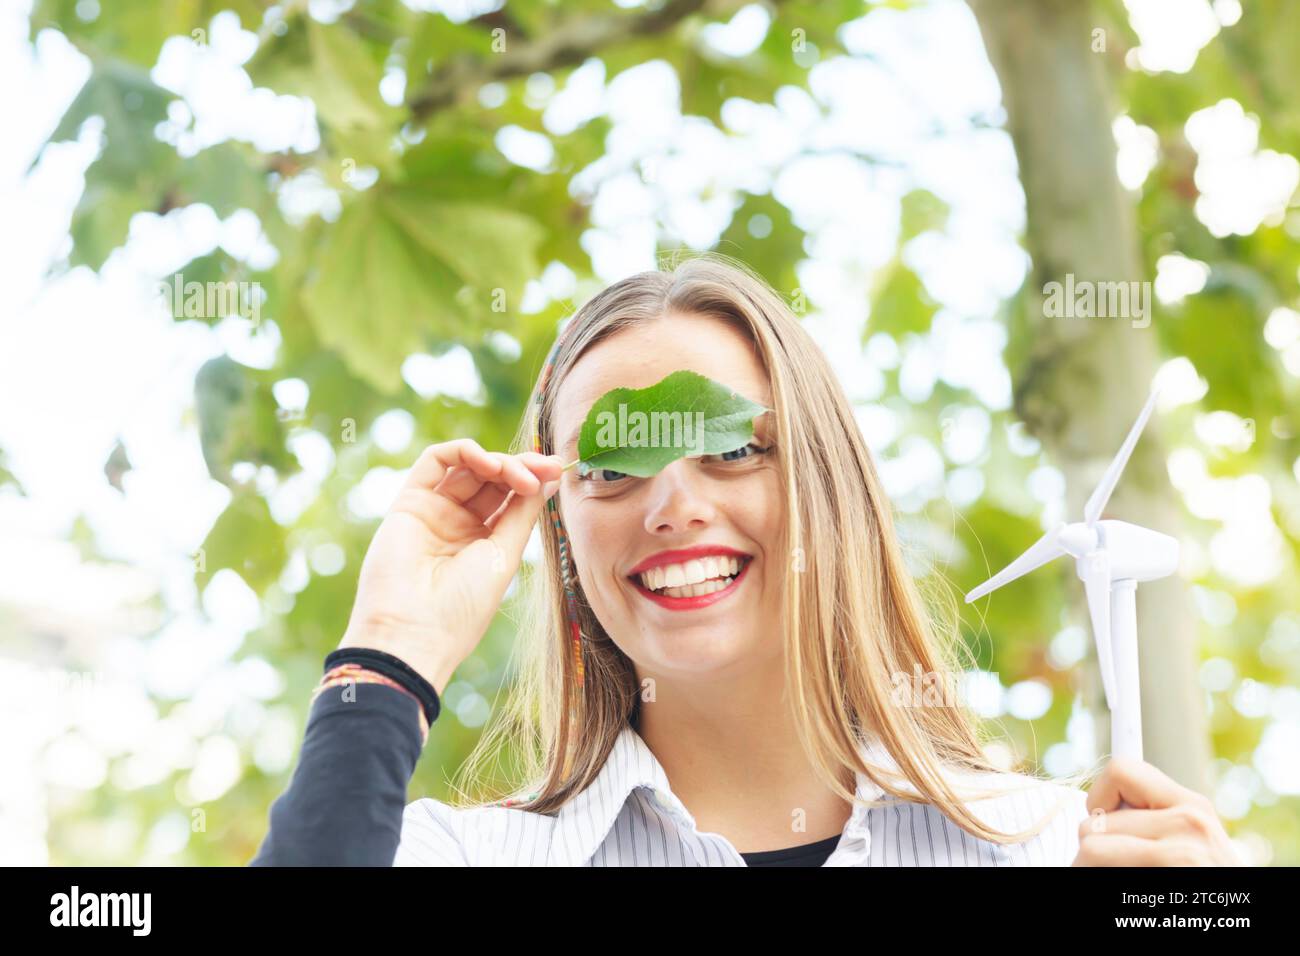 Junge Frau mit blonden langen Haaren, die grüne Klimazeichen hält Stockfoto